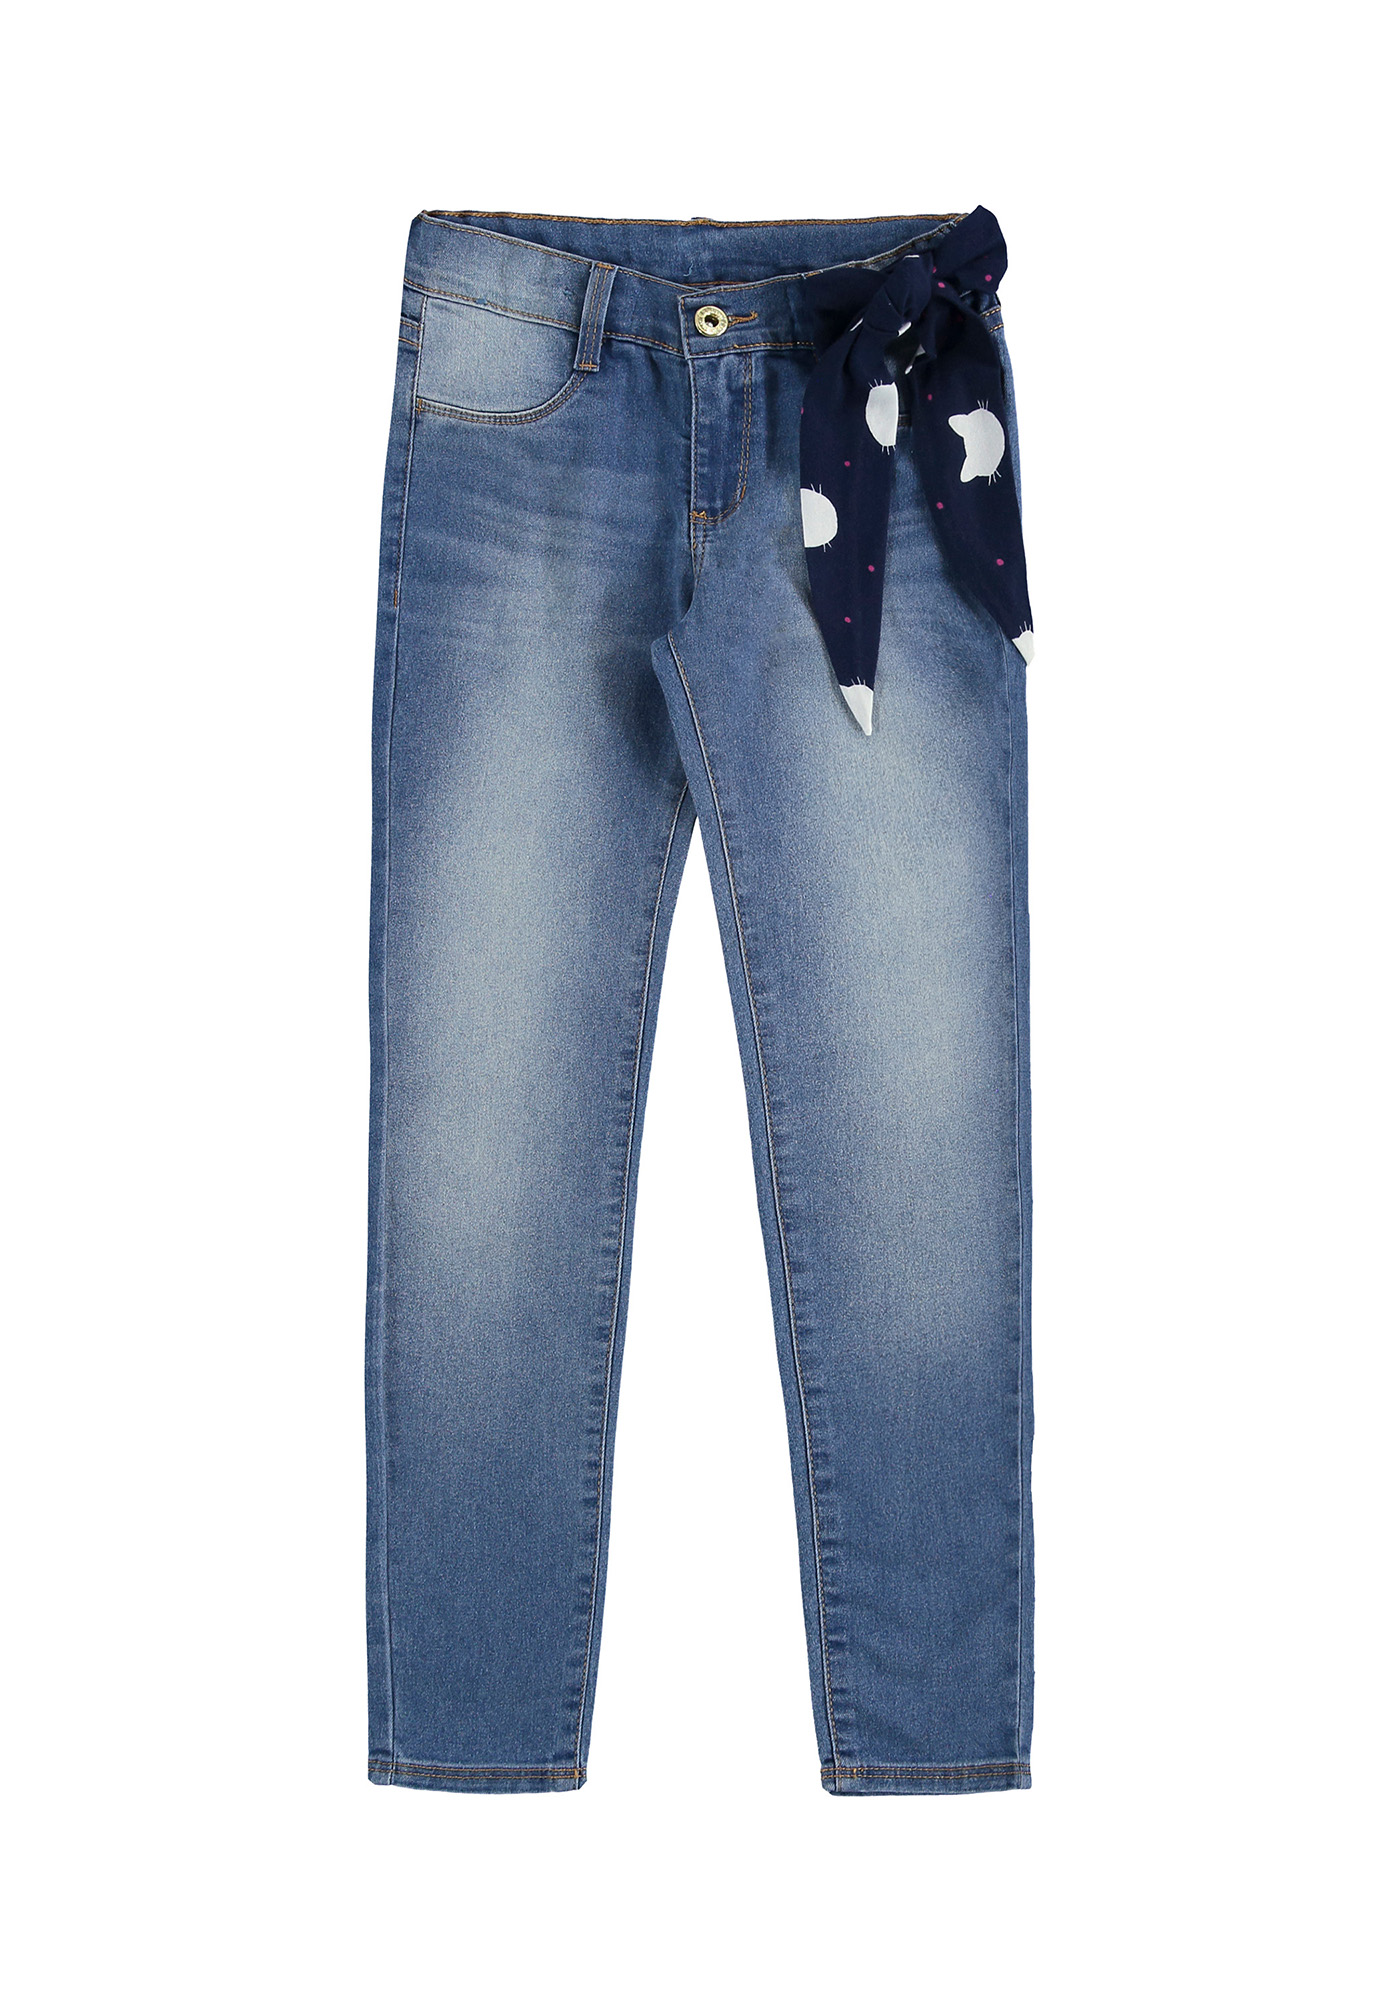 Calça Jeans Feminina Skinny Casual Elastano Slim 454 em Promoção